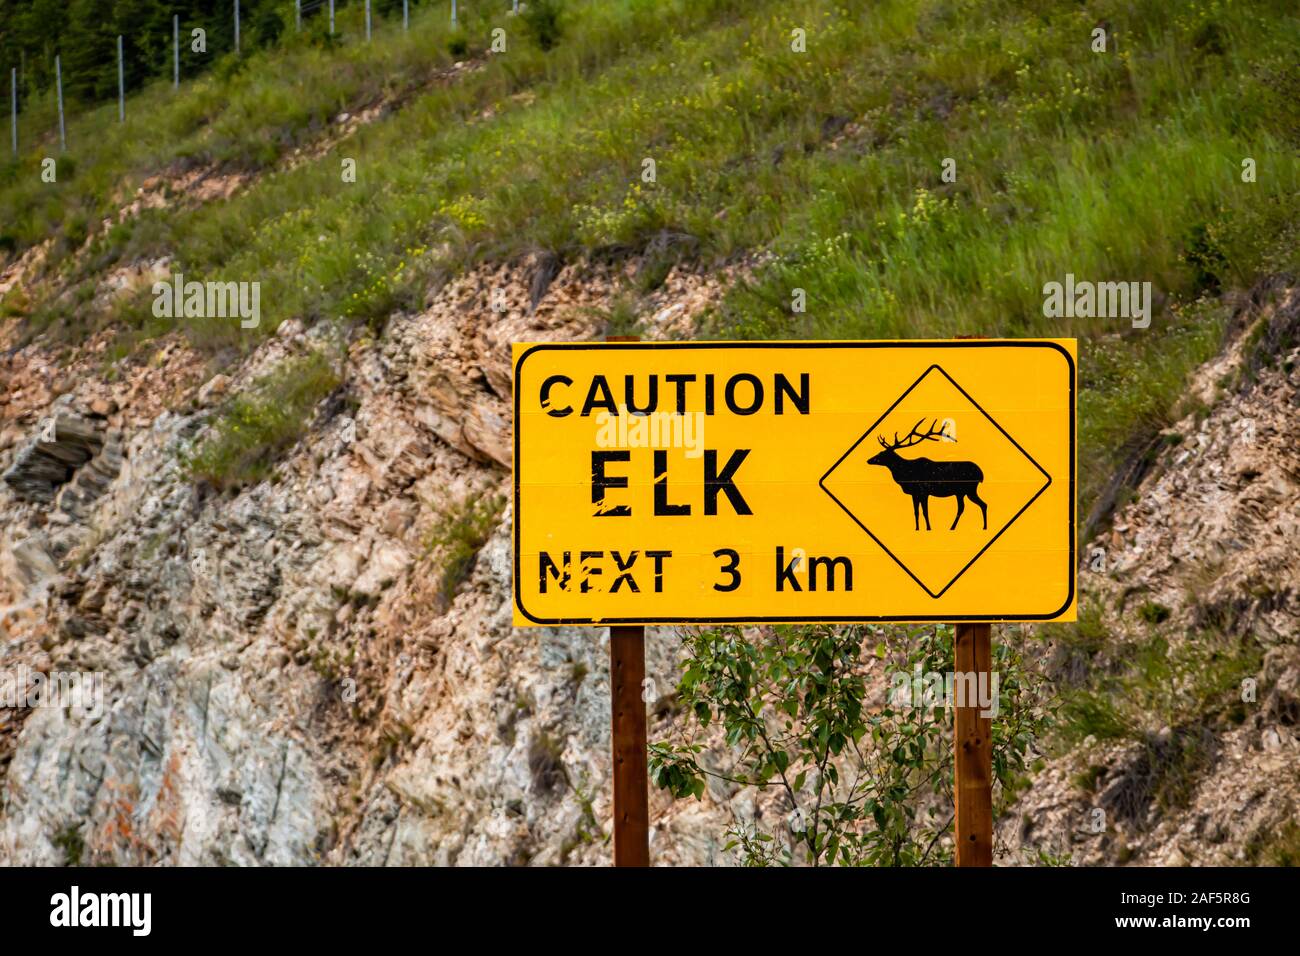 Avertissement Attention route panneau jaune, elk Crossing Road, près de 3 km avec un wapiti, symbole pays rural canadien, en bordure de la pente rocheuse avec arrière-plan Banque D'Images